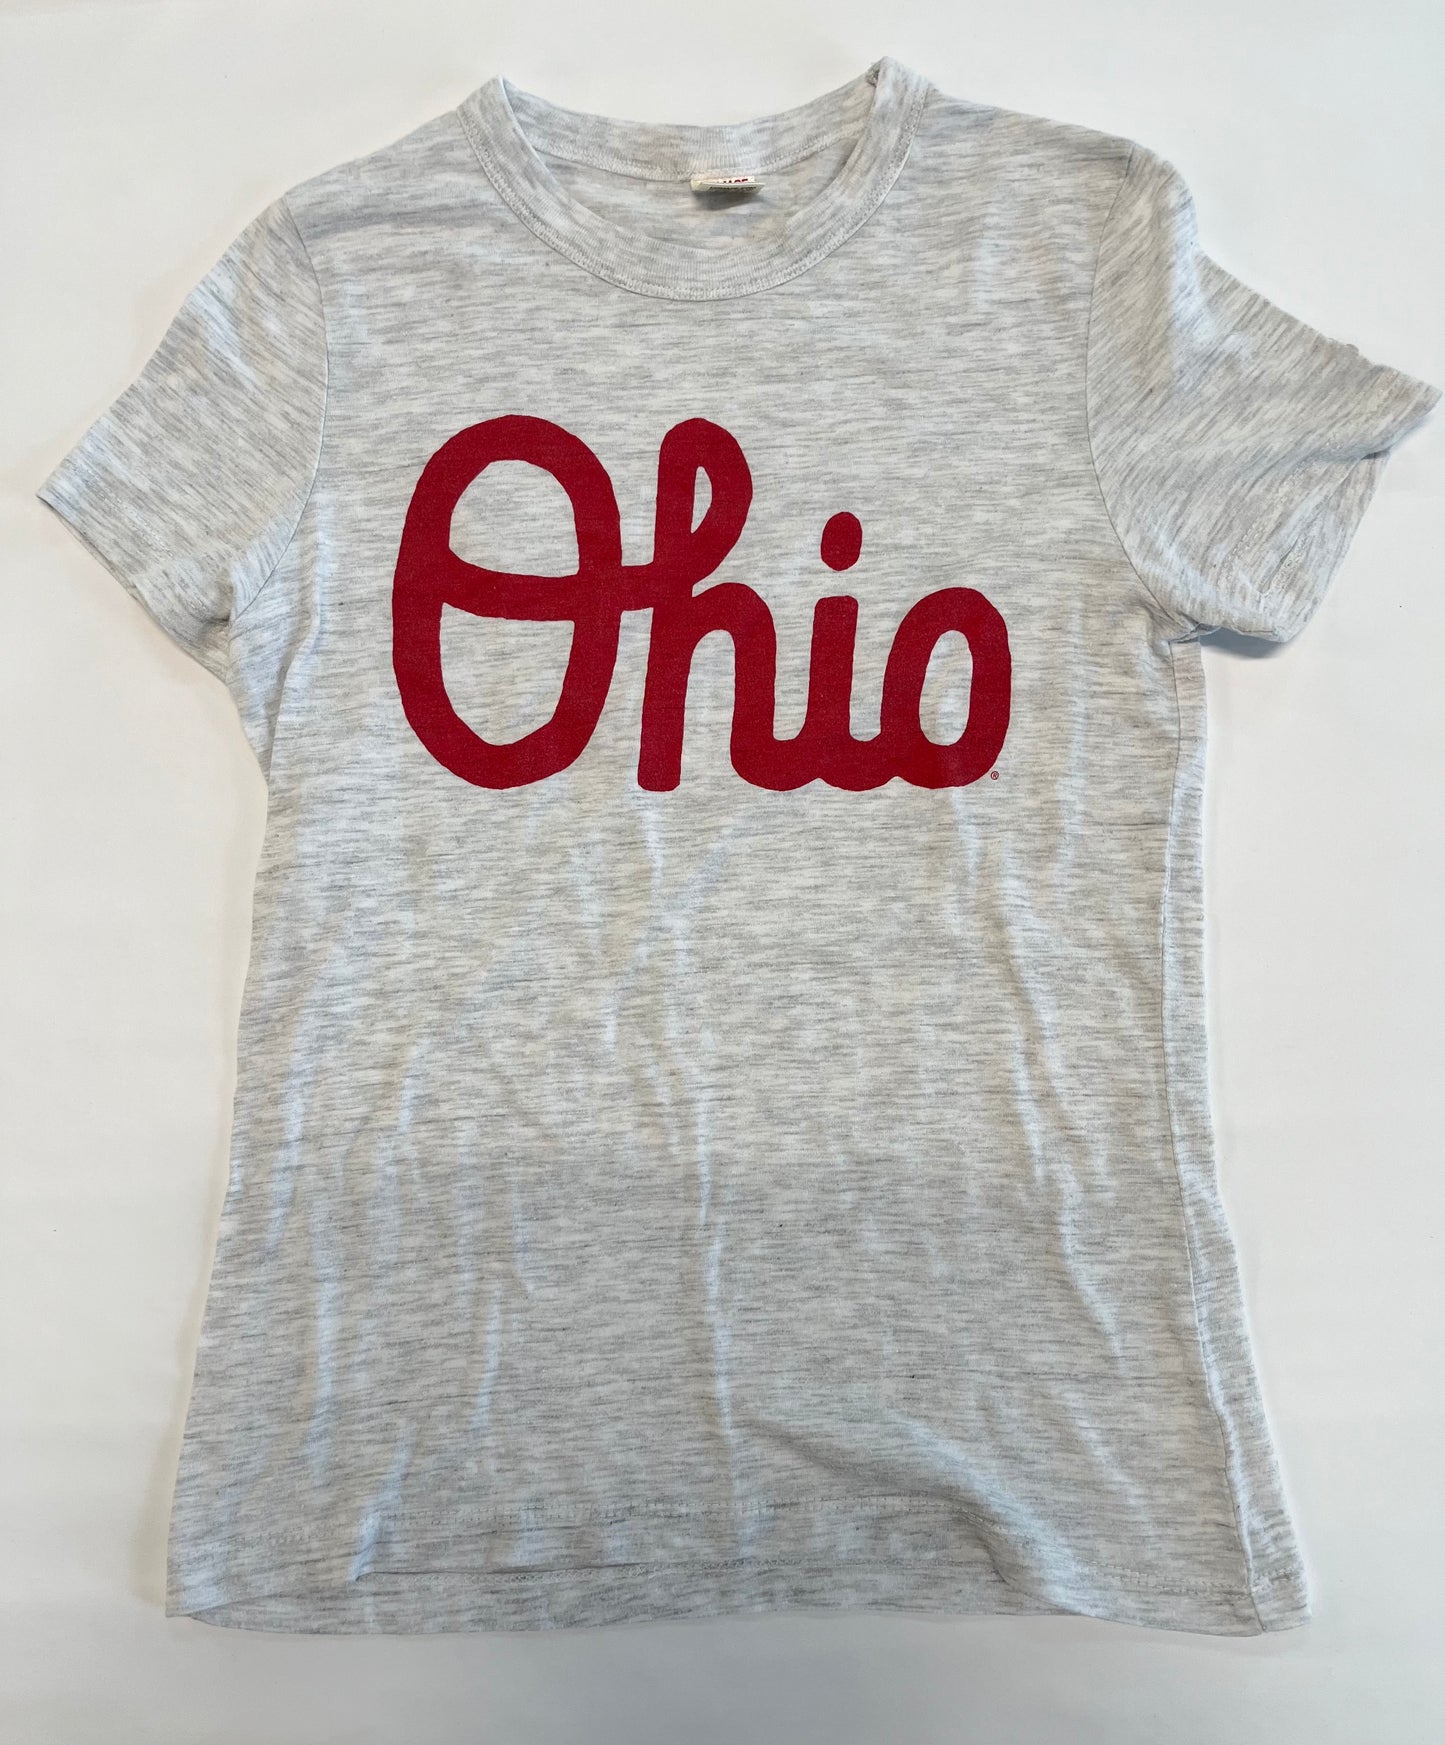 Homage Ohio tee shirt gray red Women XS REDUCED